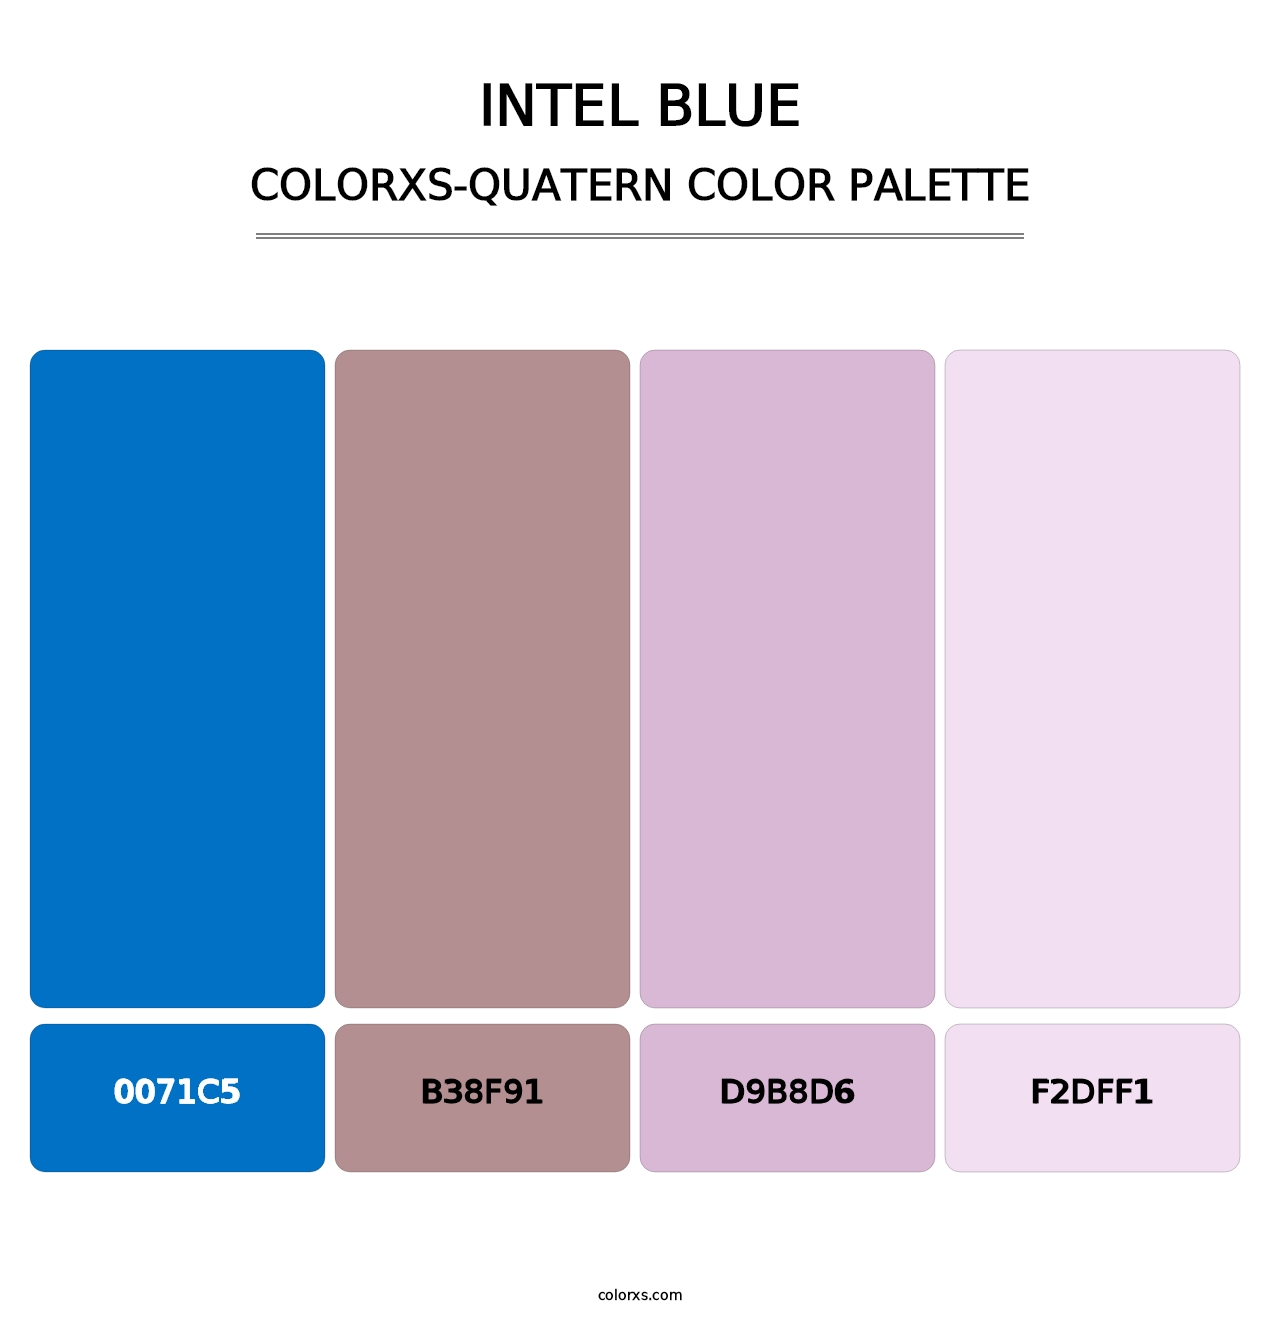 Intel Blue - Colorxs Quatern Palette